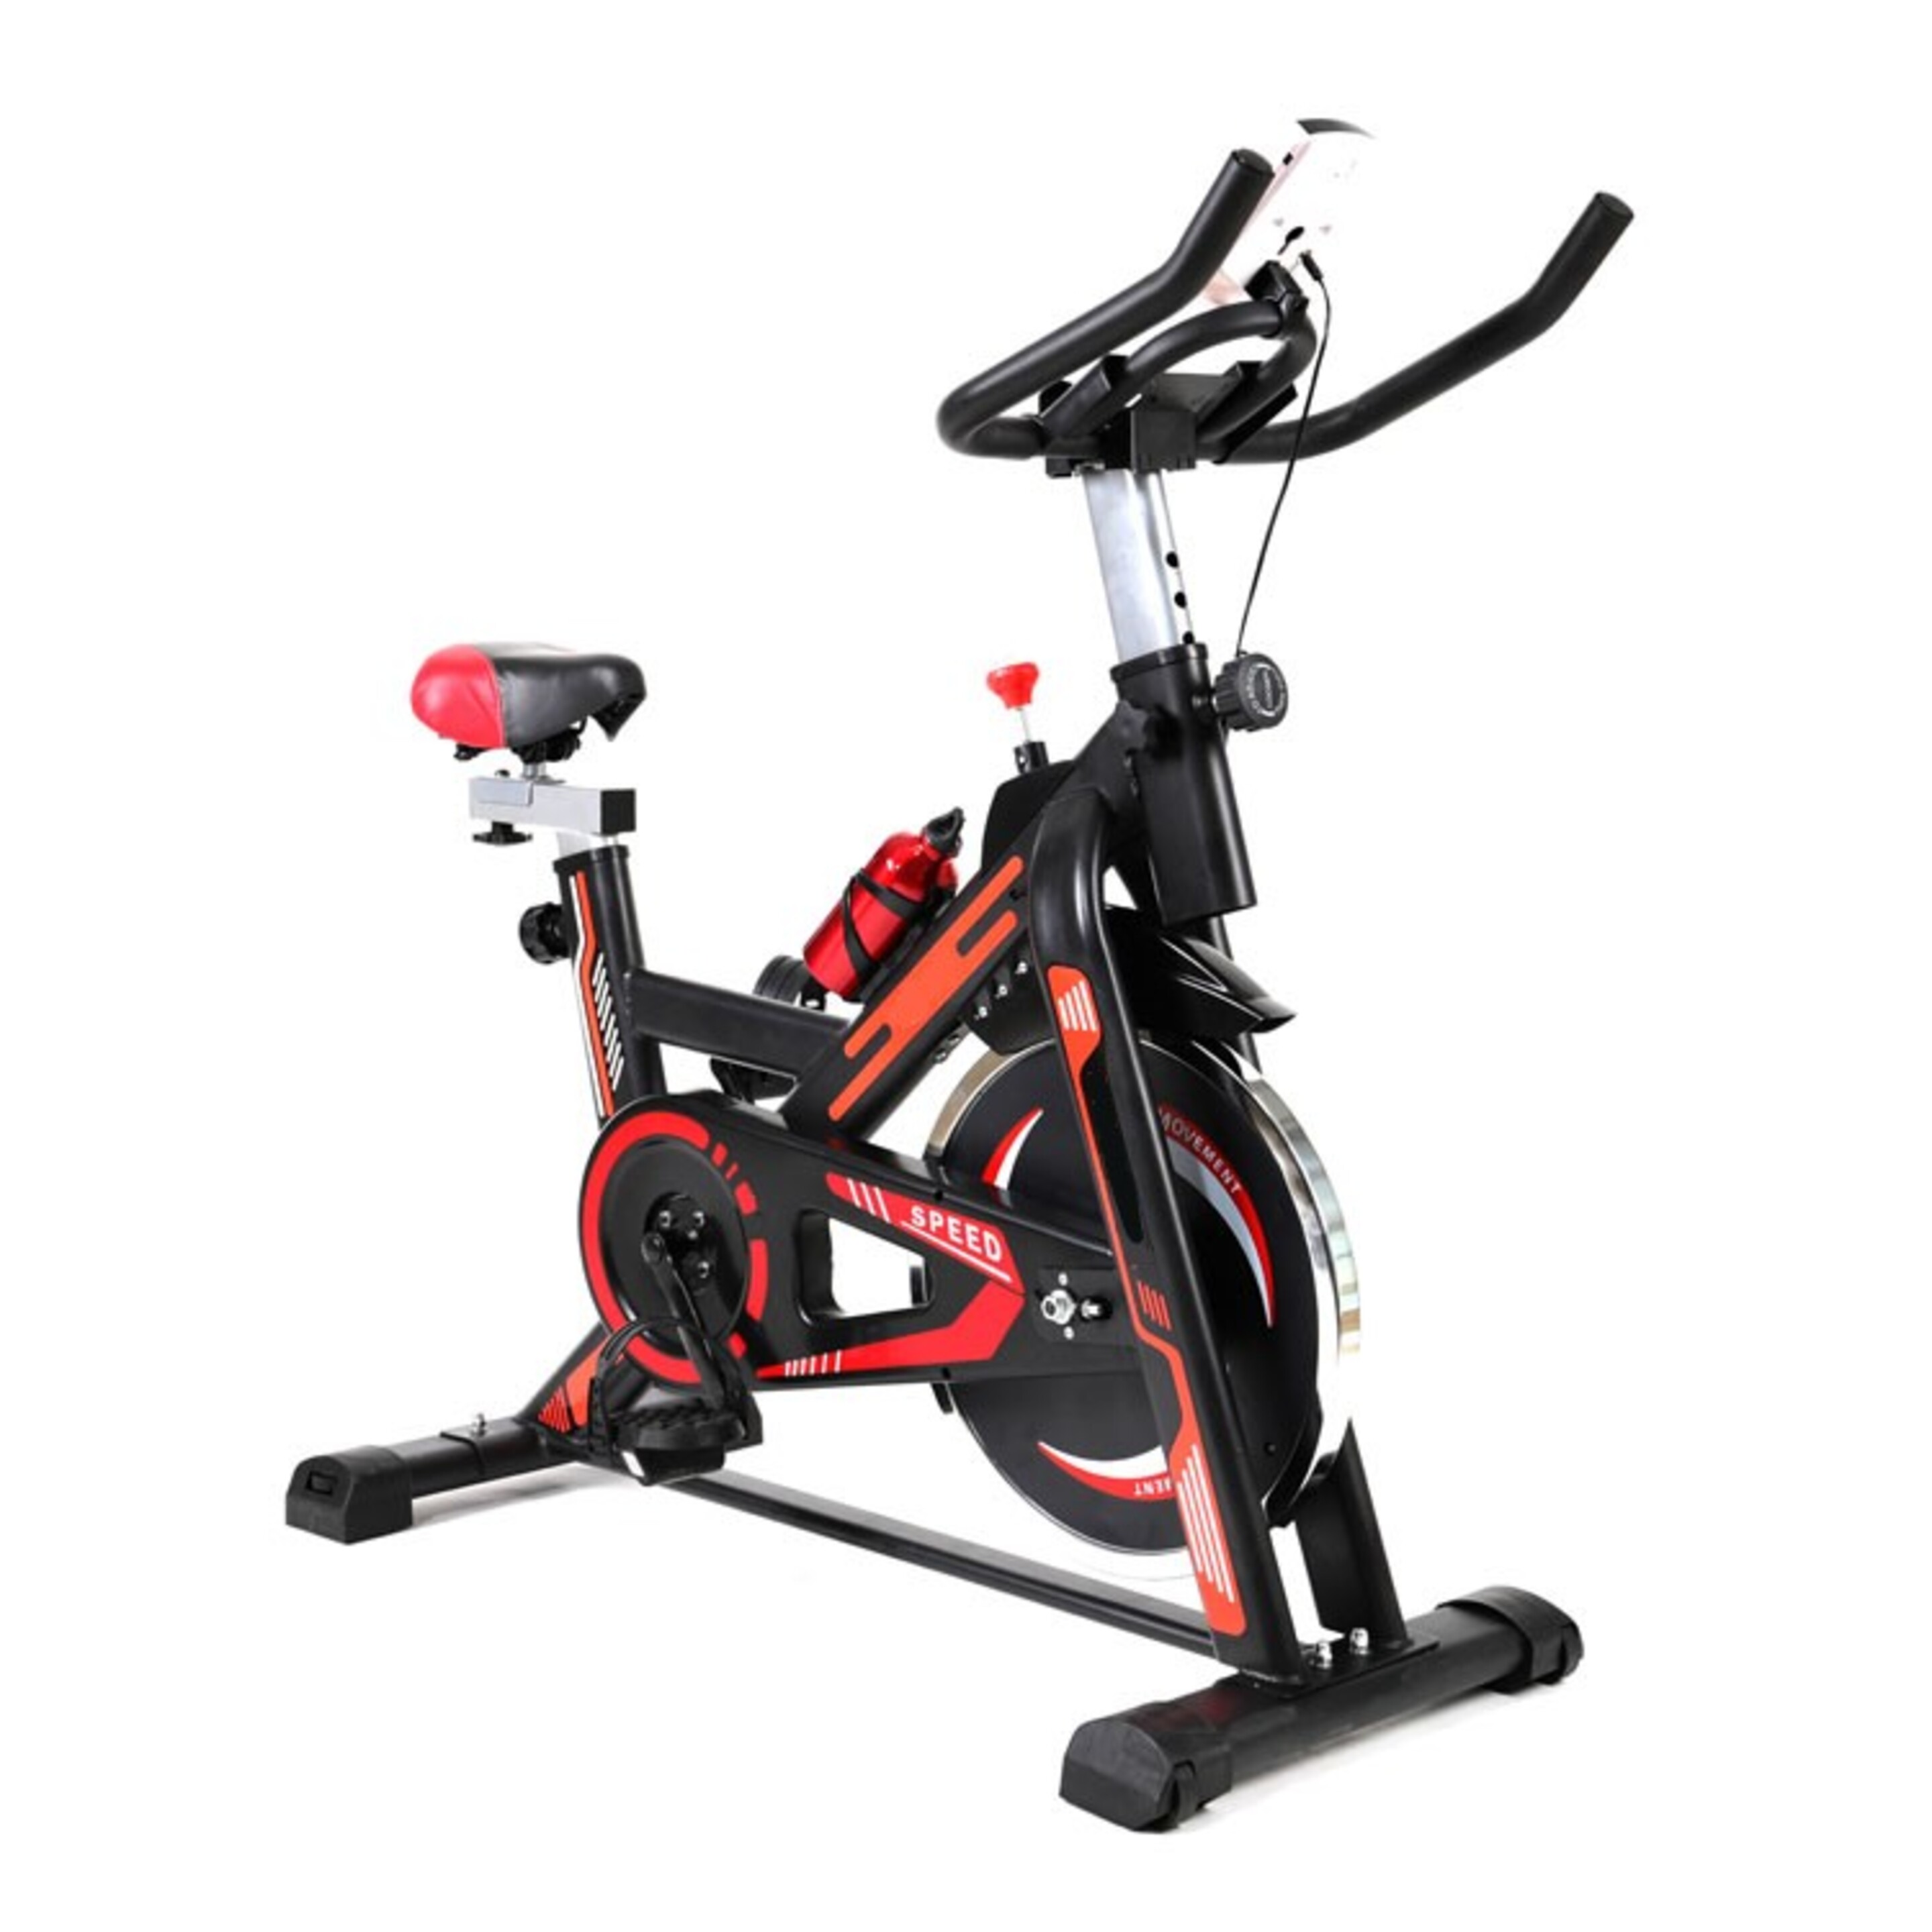 Bicicleta Grupo Contact Ciclo Indoor Con Display Para Medir Velocidad, Distancia, Calorías Y Tiempo. - Negro  MKP